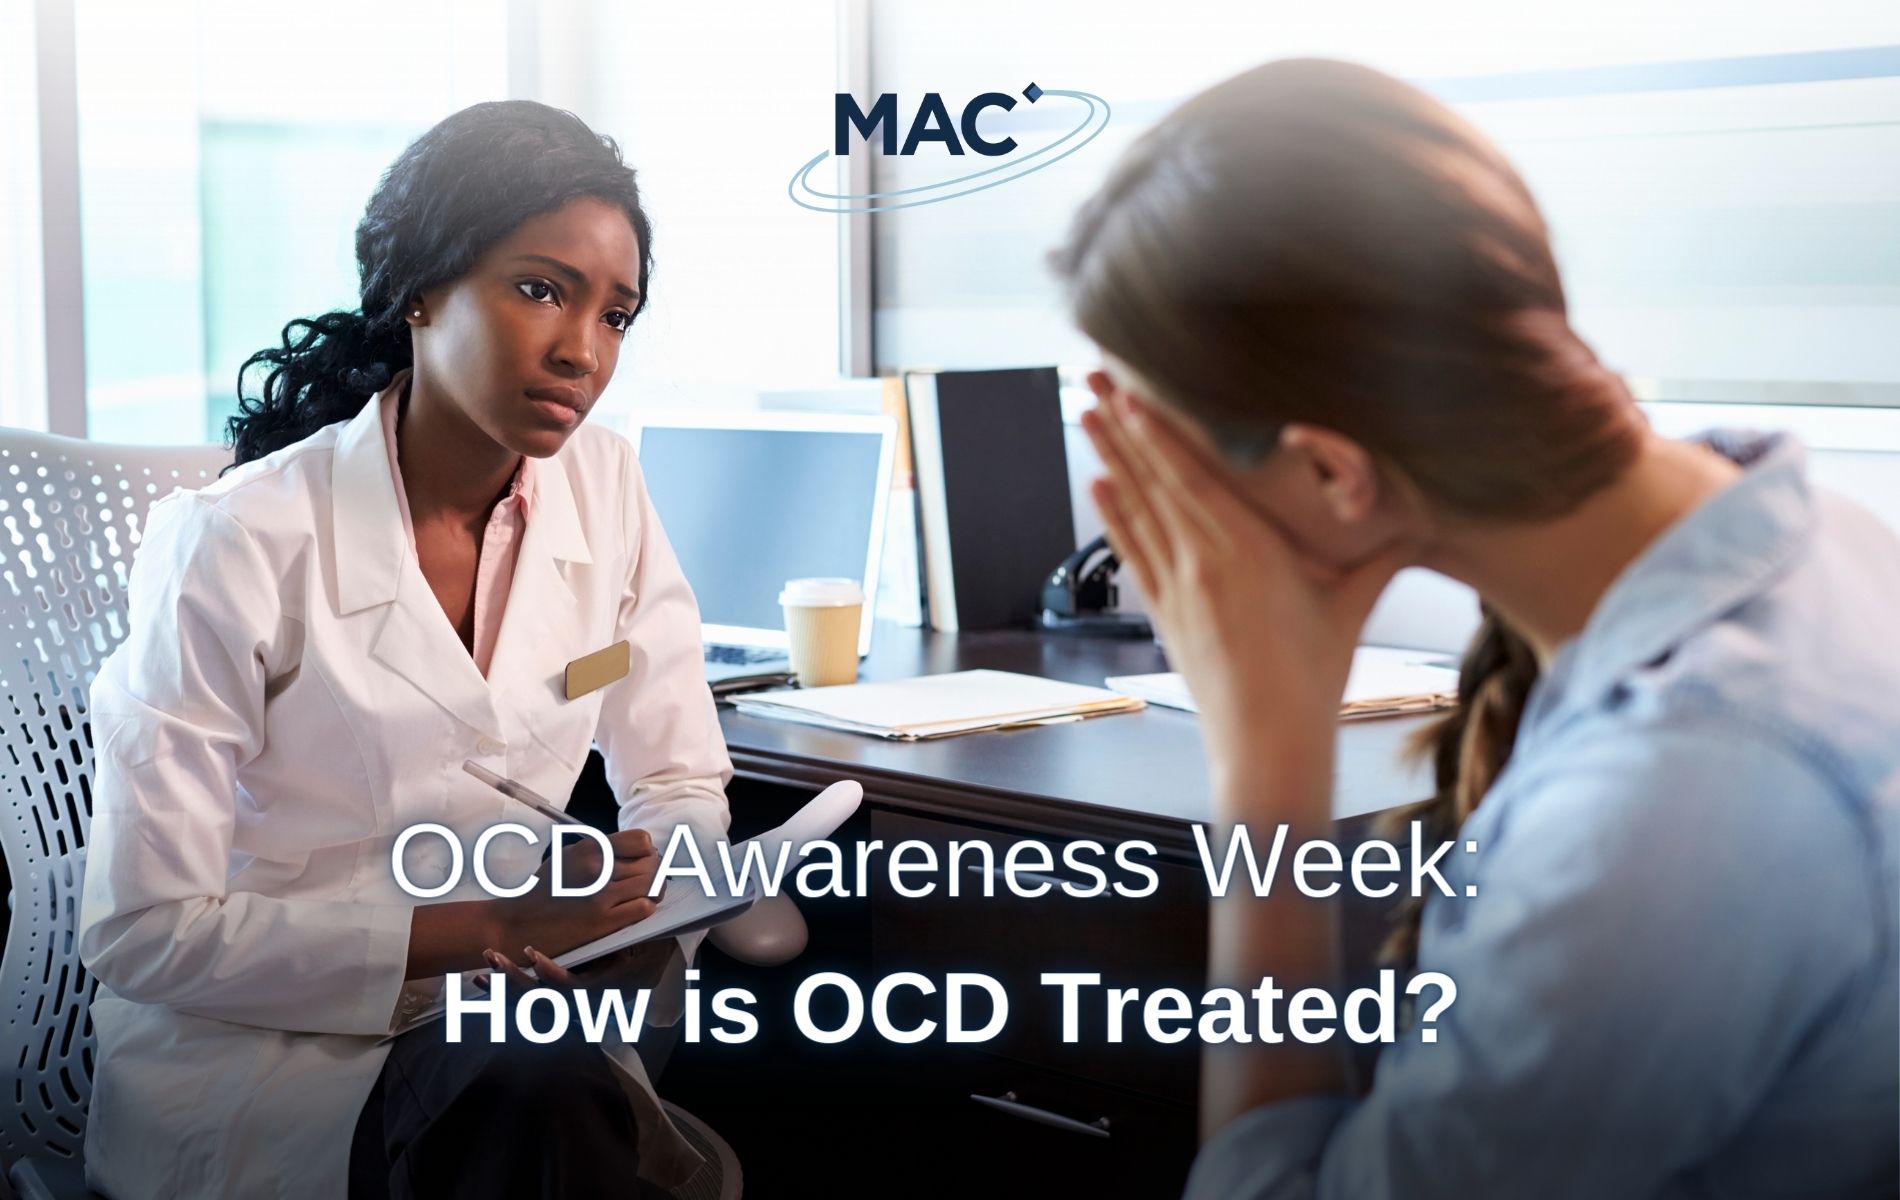 How is OCD Treated?